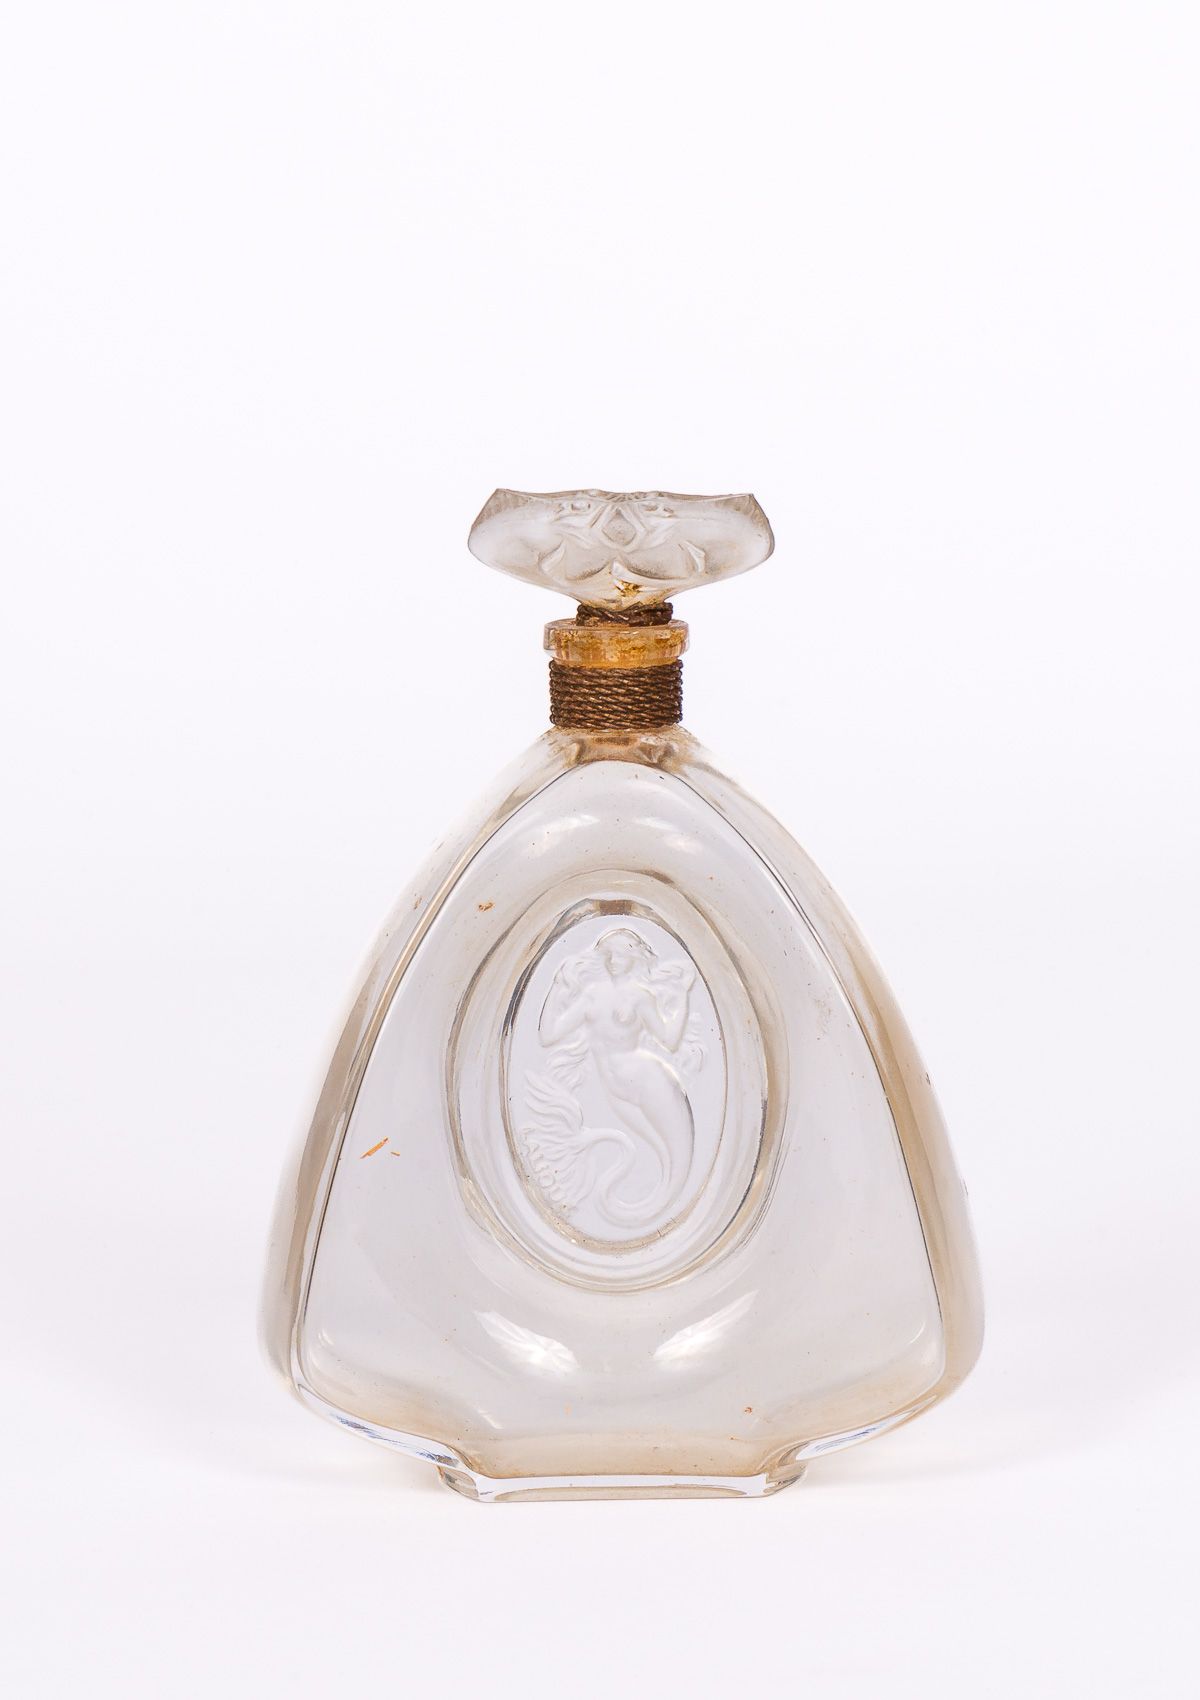 Null "美人鱼"--为BURMANN创作 ( 1920年 )

罕见的1912年设计和编辑的无色玻璃压制的瓶子，三角形的瓶身装饰着扁平的美人鱼图案，磨砂的瓶&hellip;